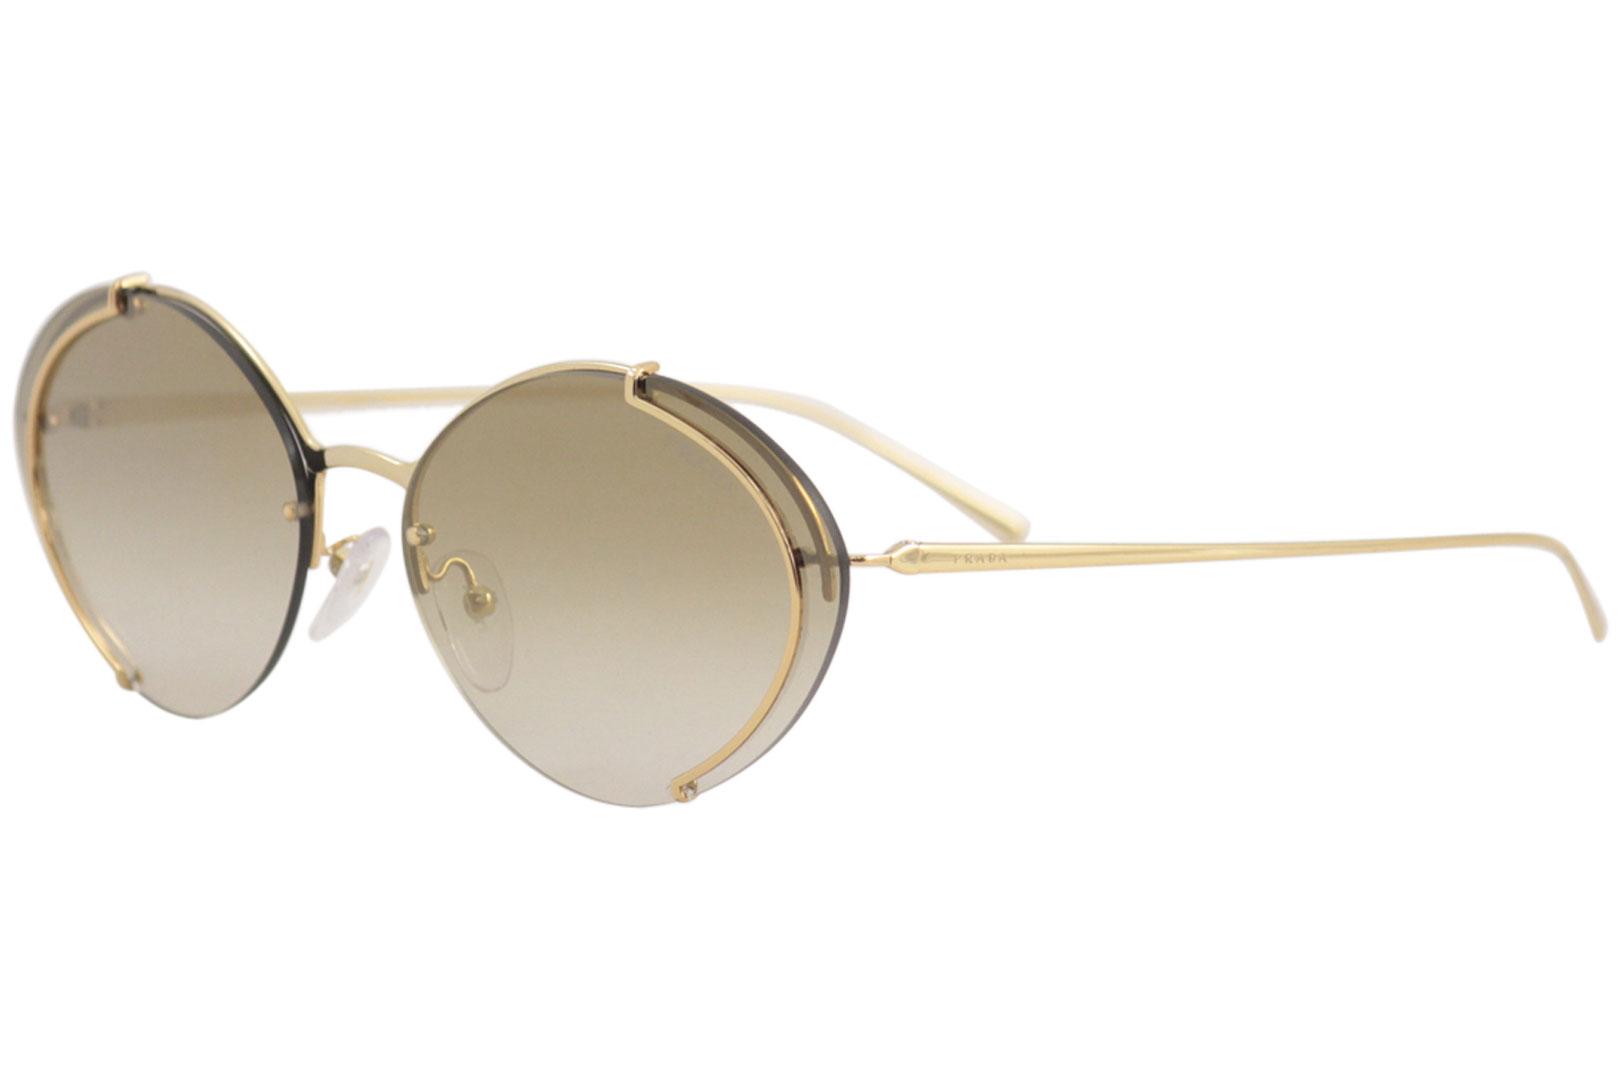 prada oval sunglasses